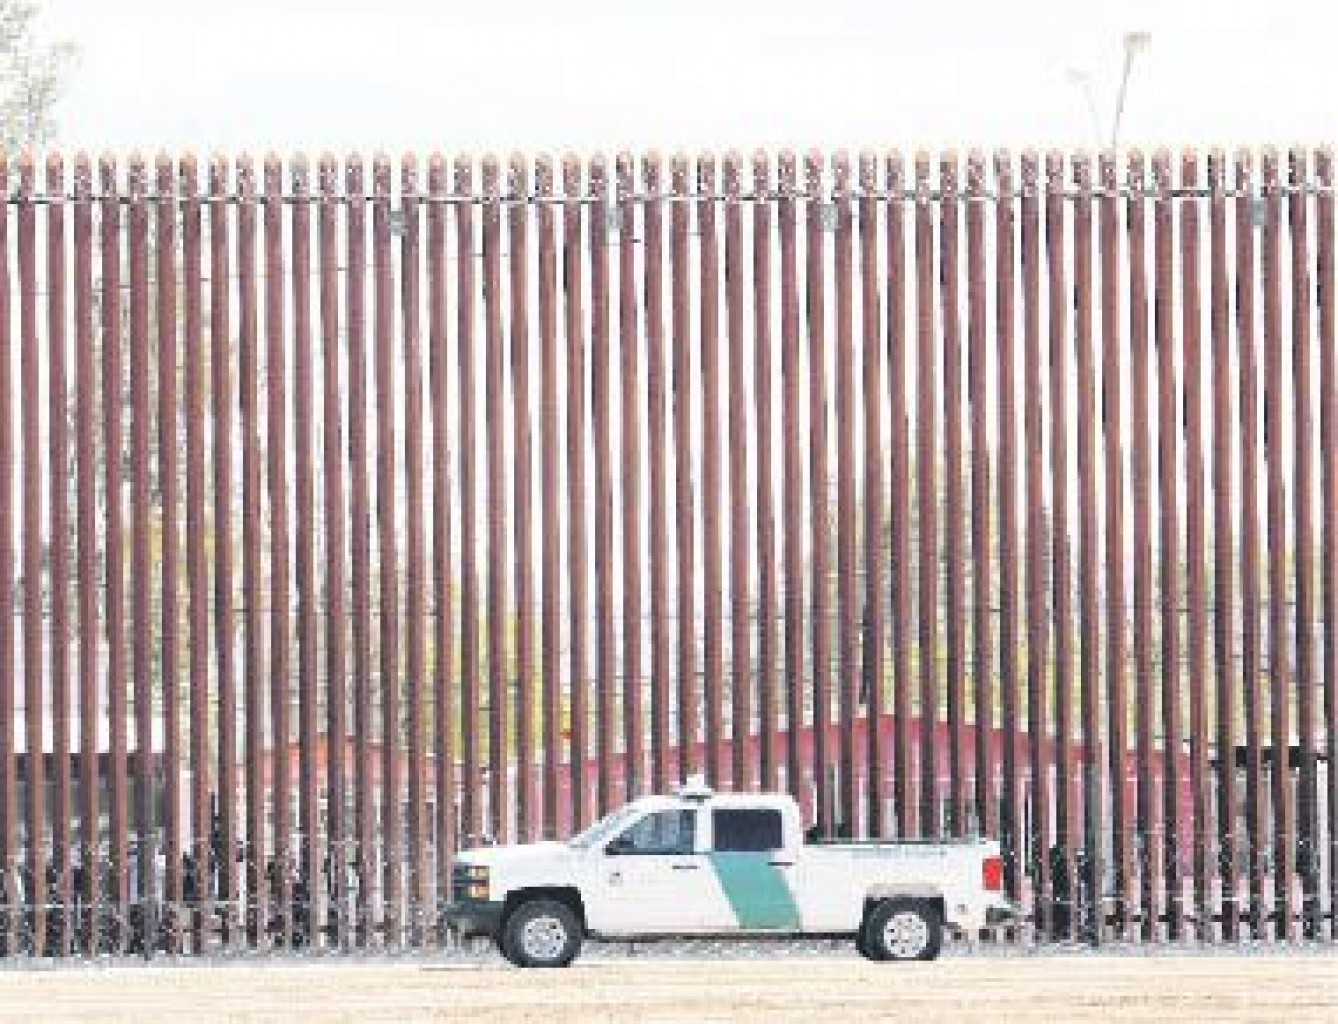 Muere mujer embarazada de 19 años tras  caer de muro fronterizo en EEUU